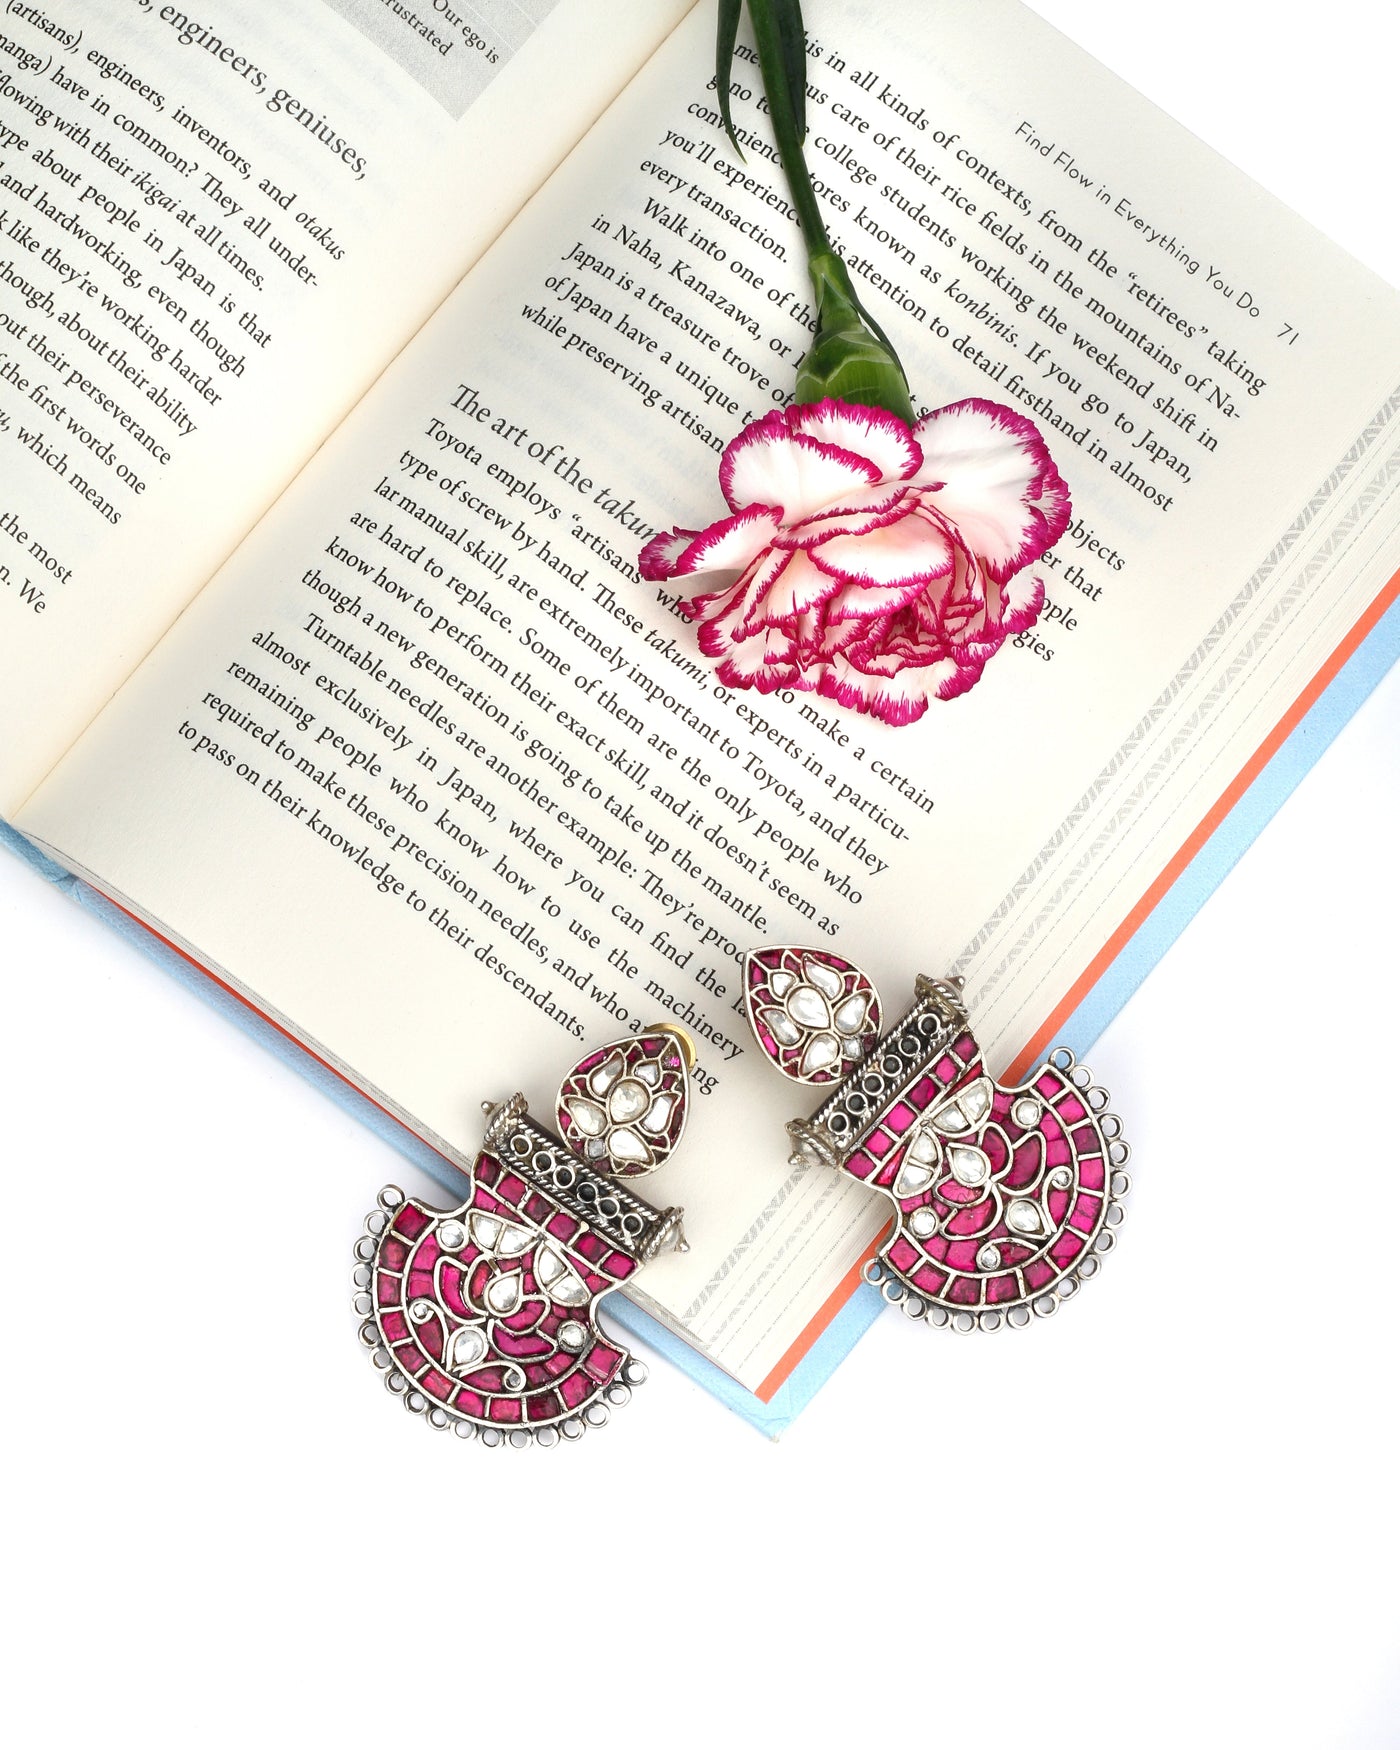 Sangeeta Boochra Pink Tribal Silver Earrings-Earrings-Sangeeta Boochra